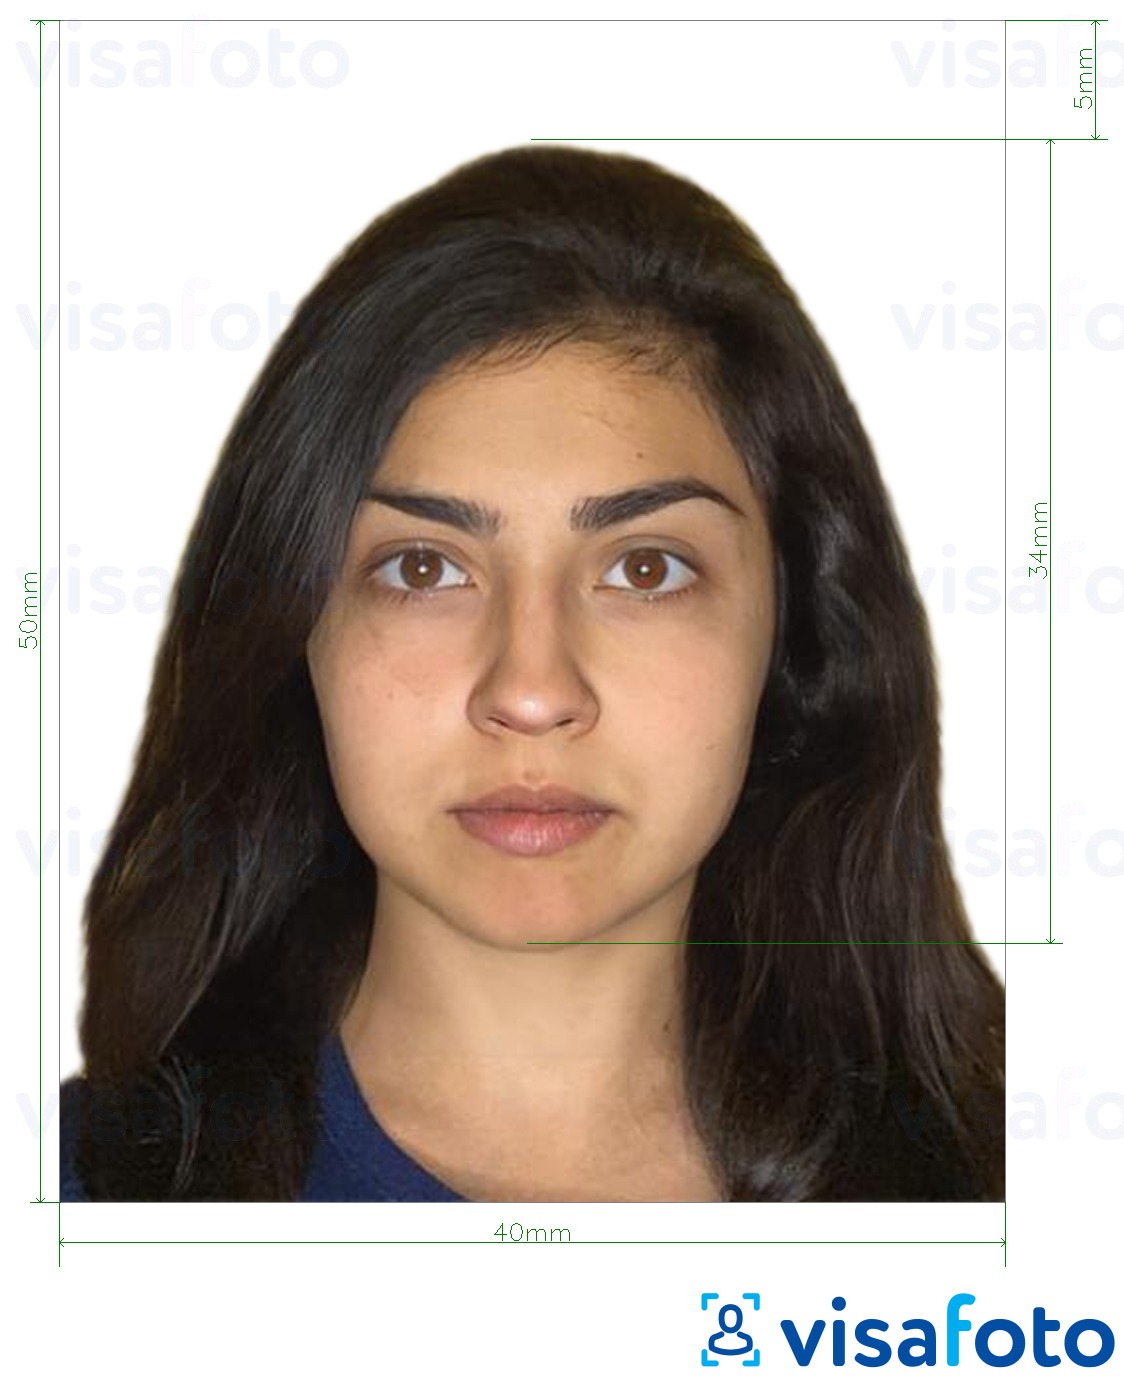 Contoh dari foto untuk Paspor Nikaragua 4x5 cm dengan ukuran spesifikasi yang tepat